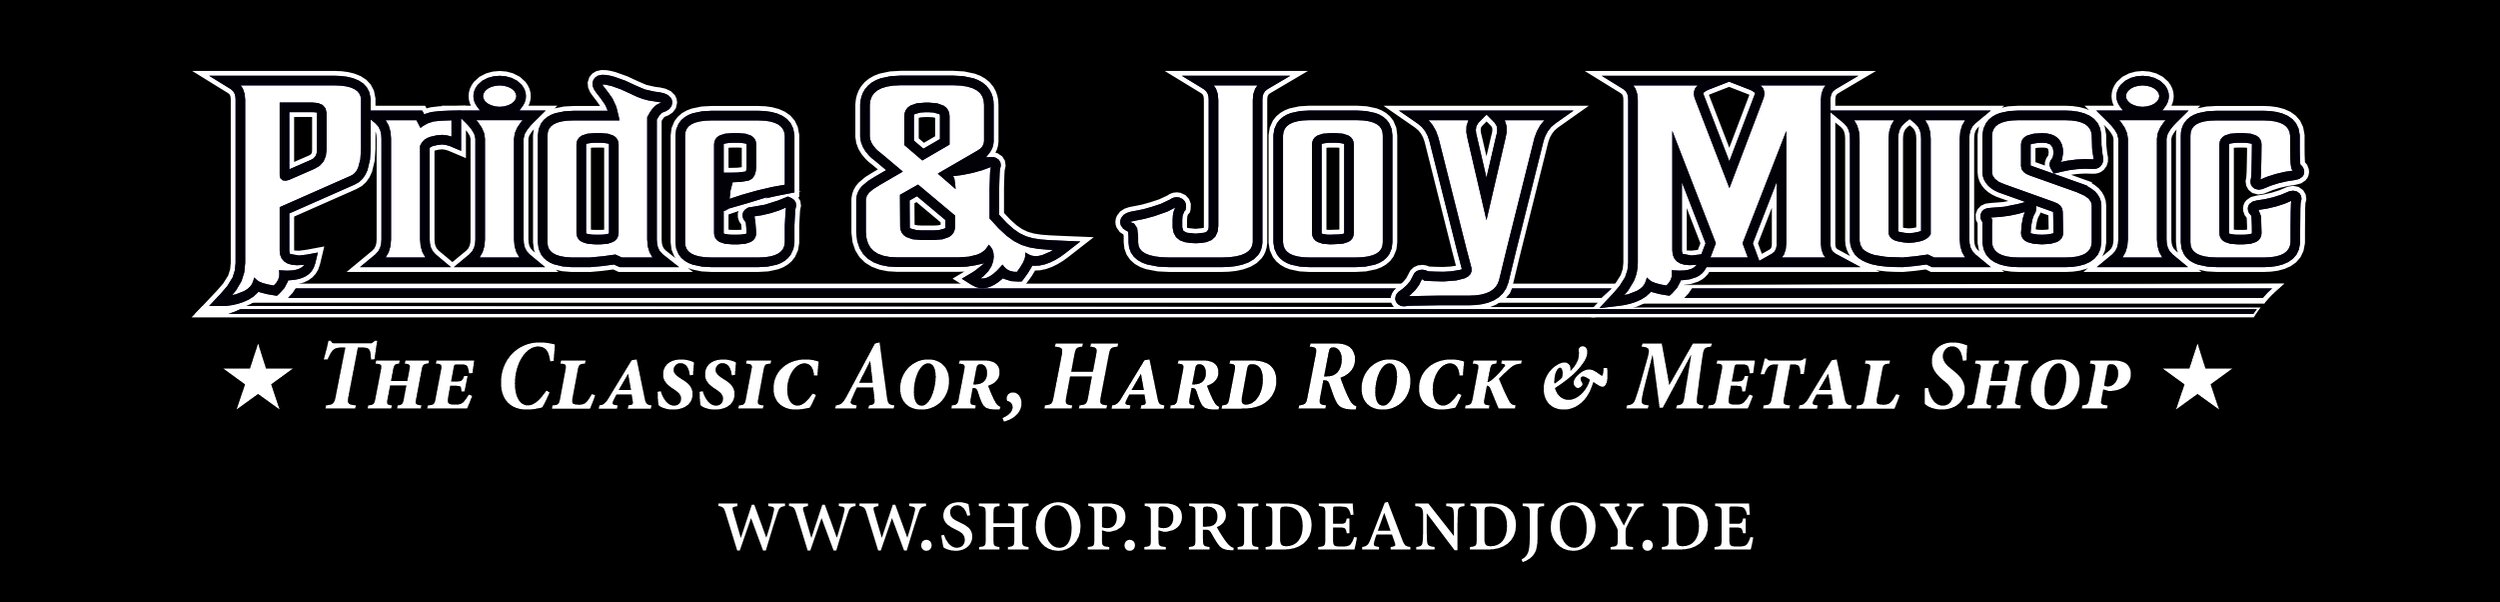 Pride & Joy Music (Germany) Jpg.jpg